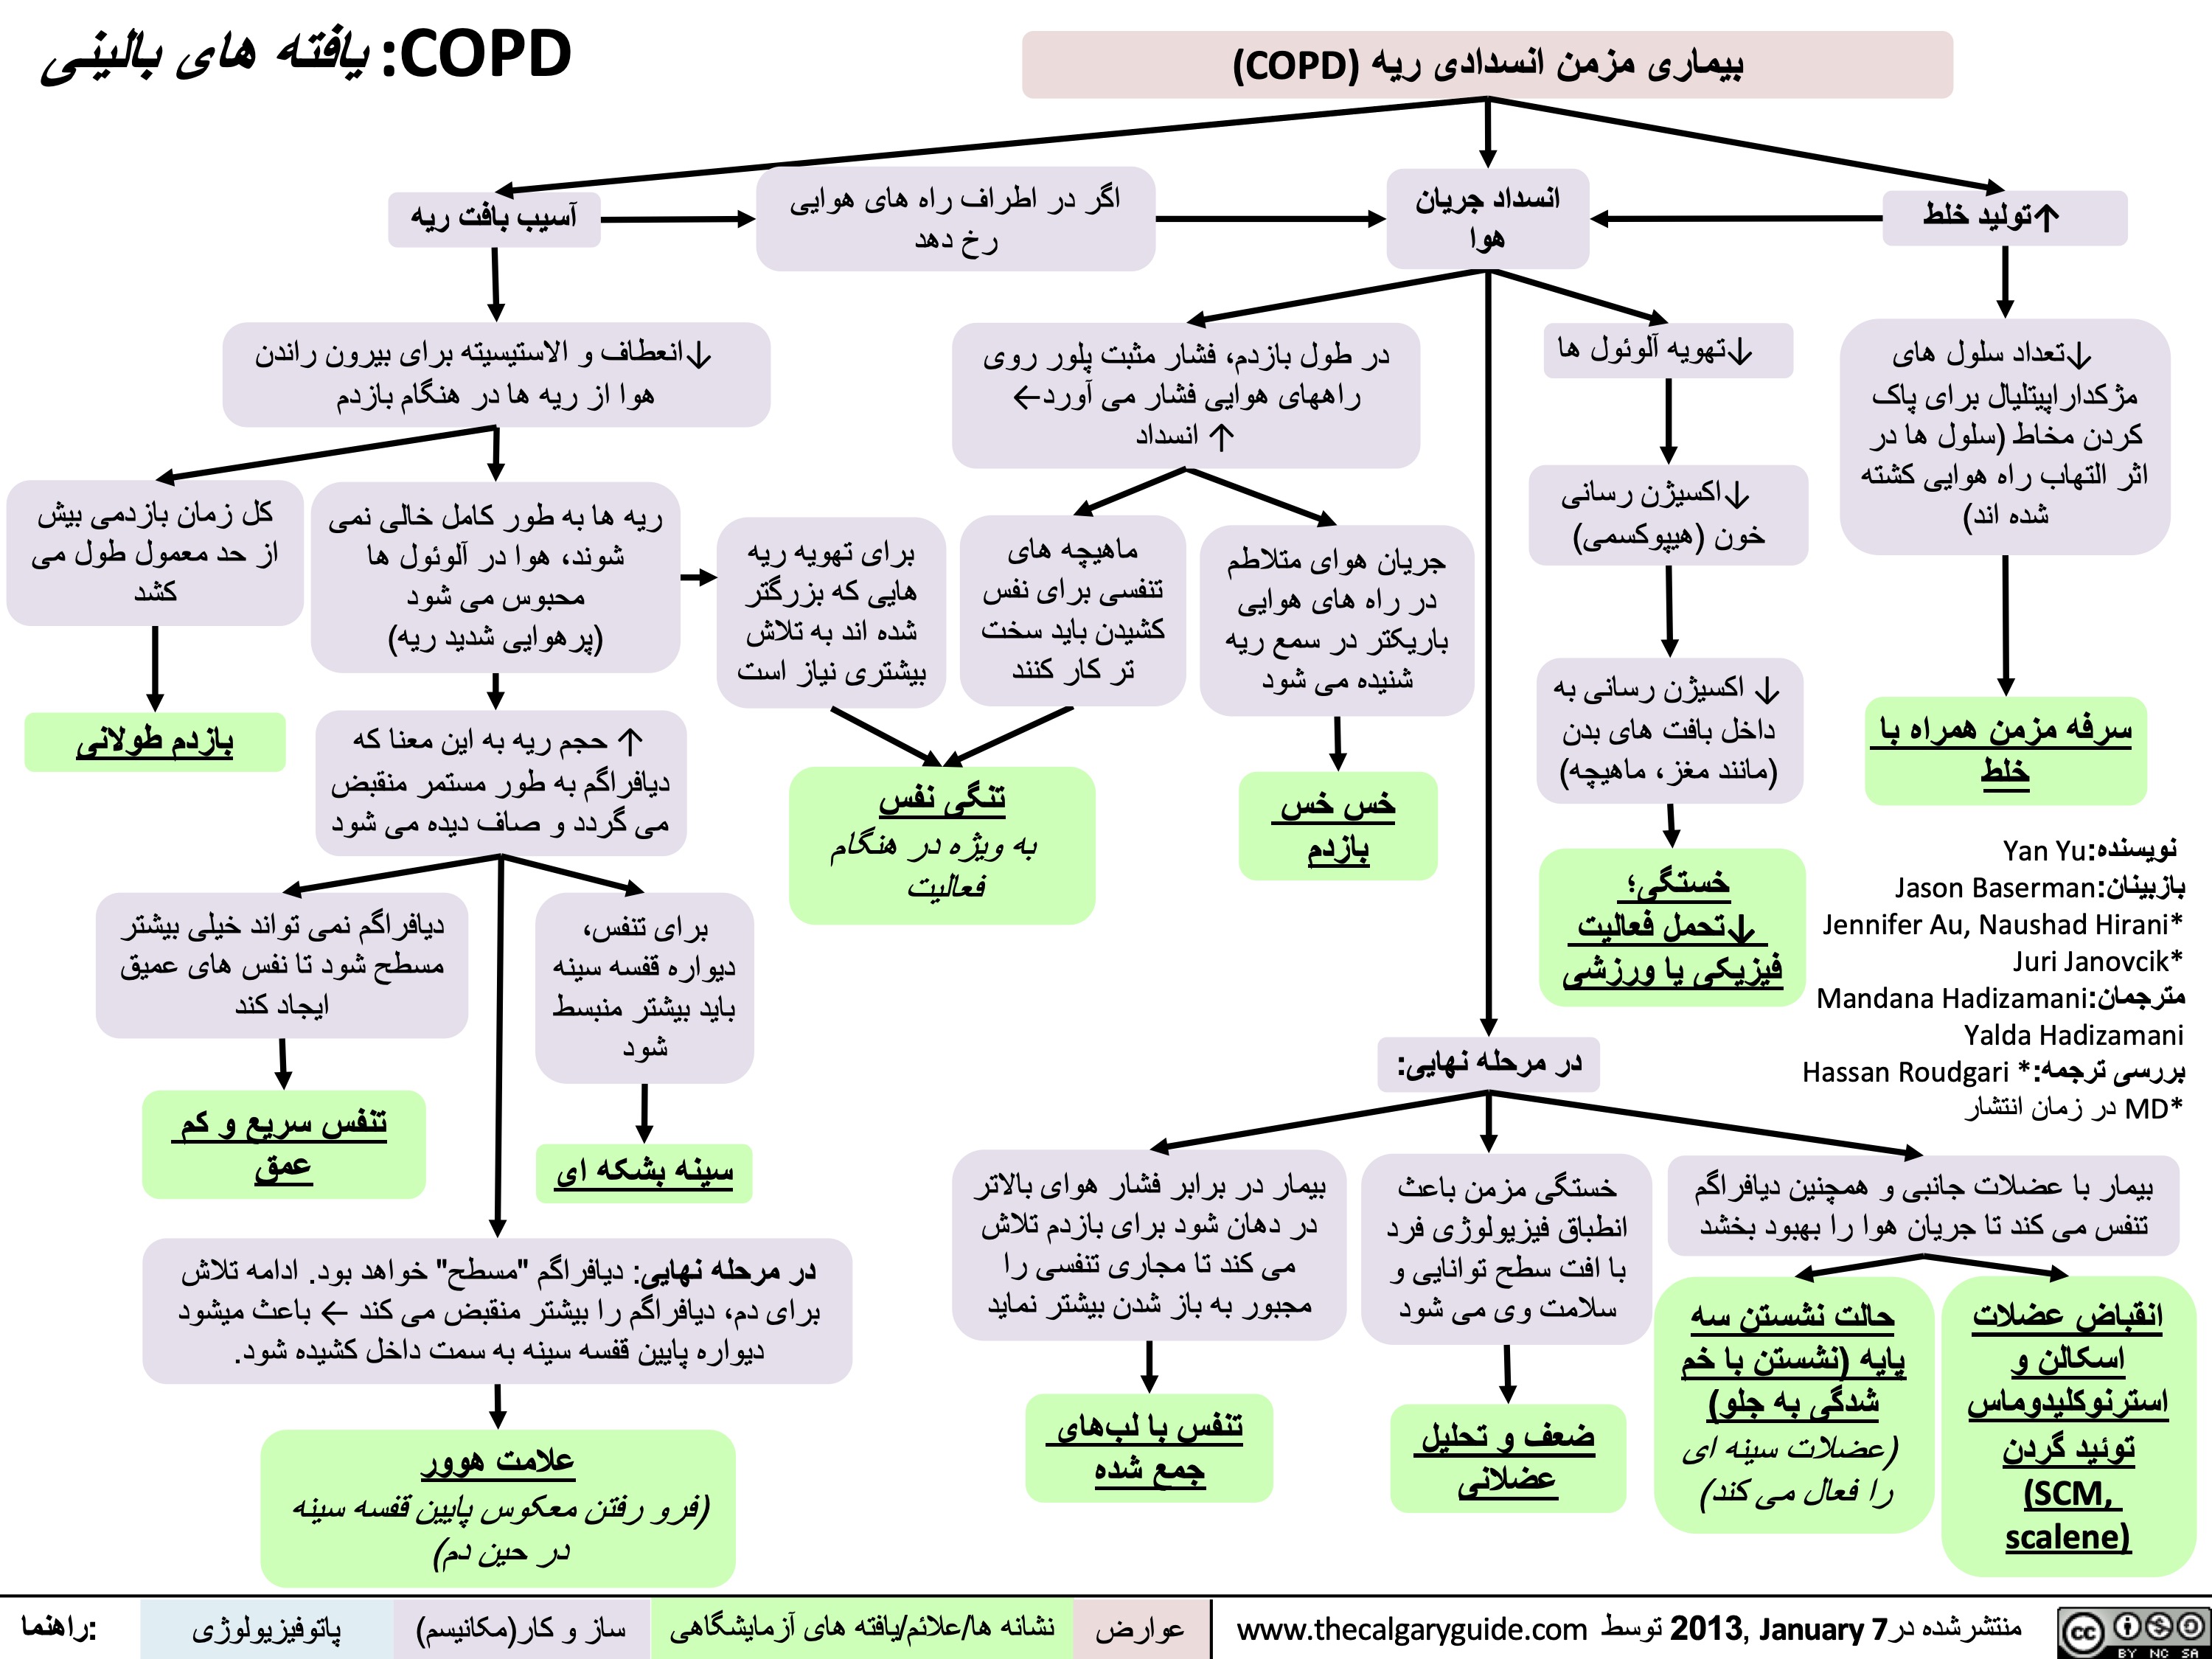 COPD - یافتھ ھای بالینی